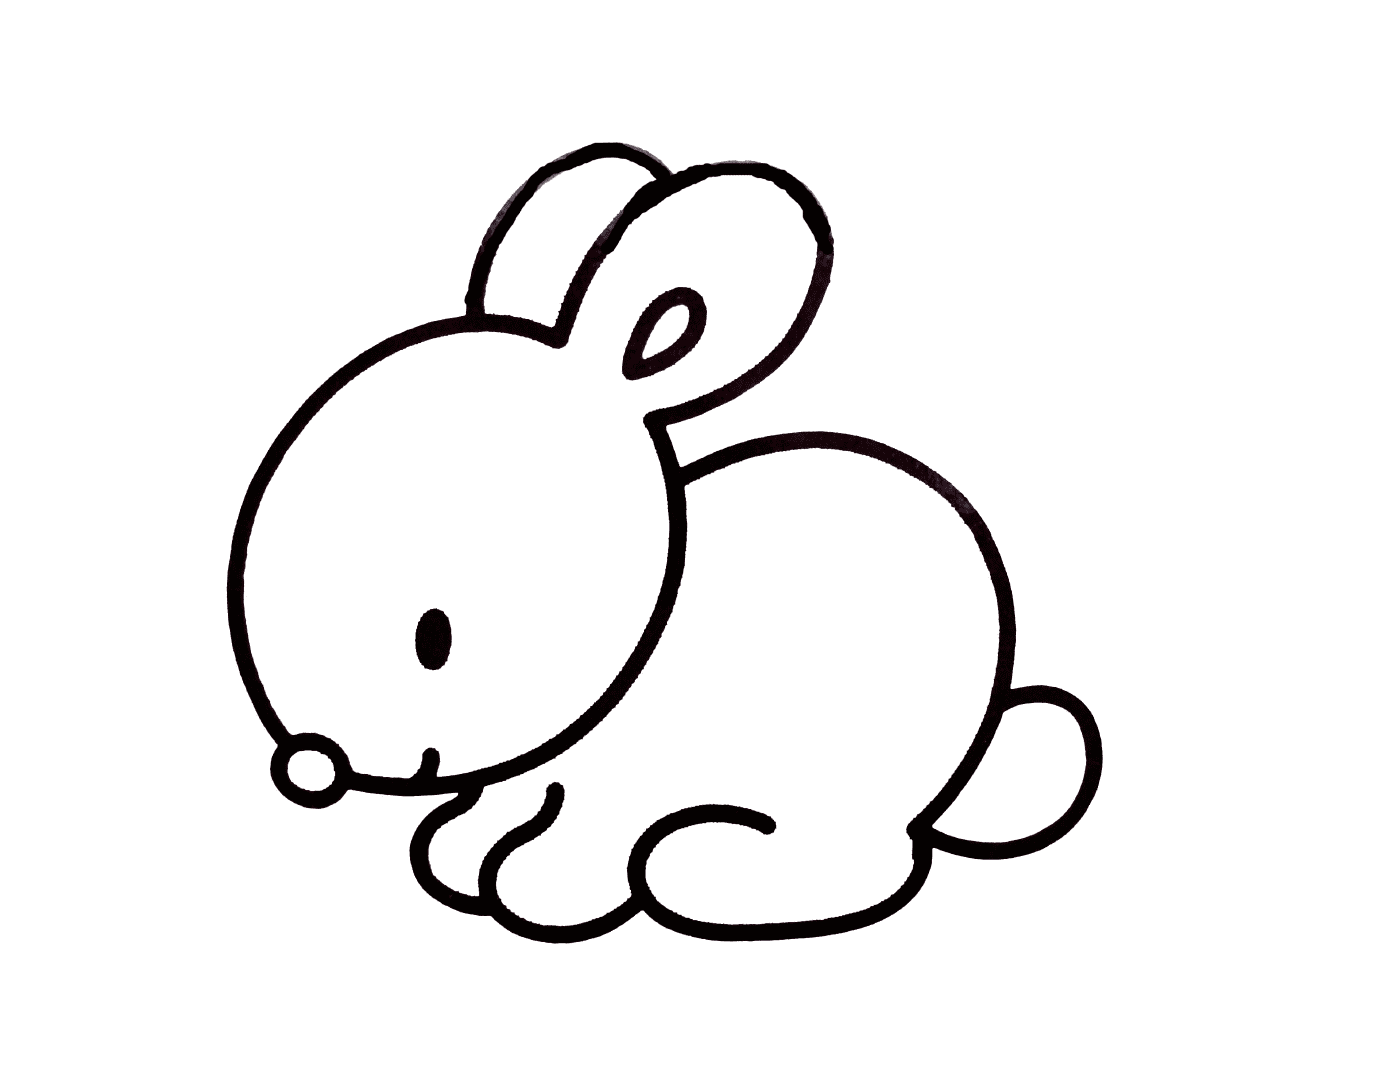  Un conejo fácil de dibujar 